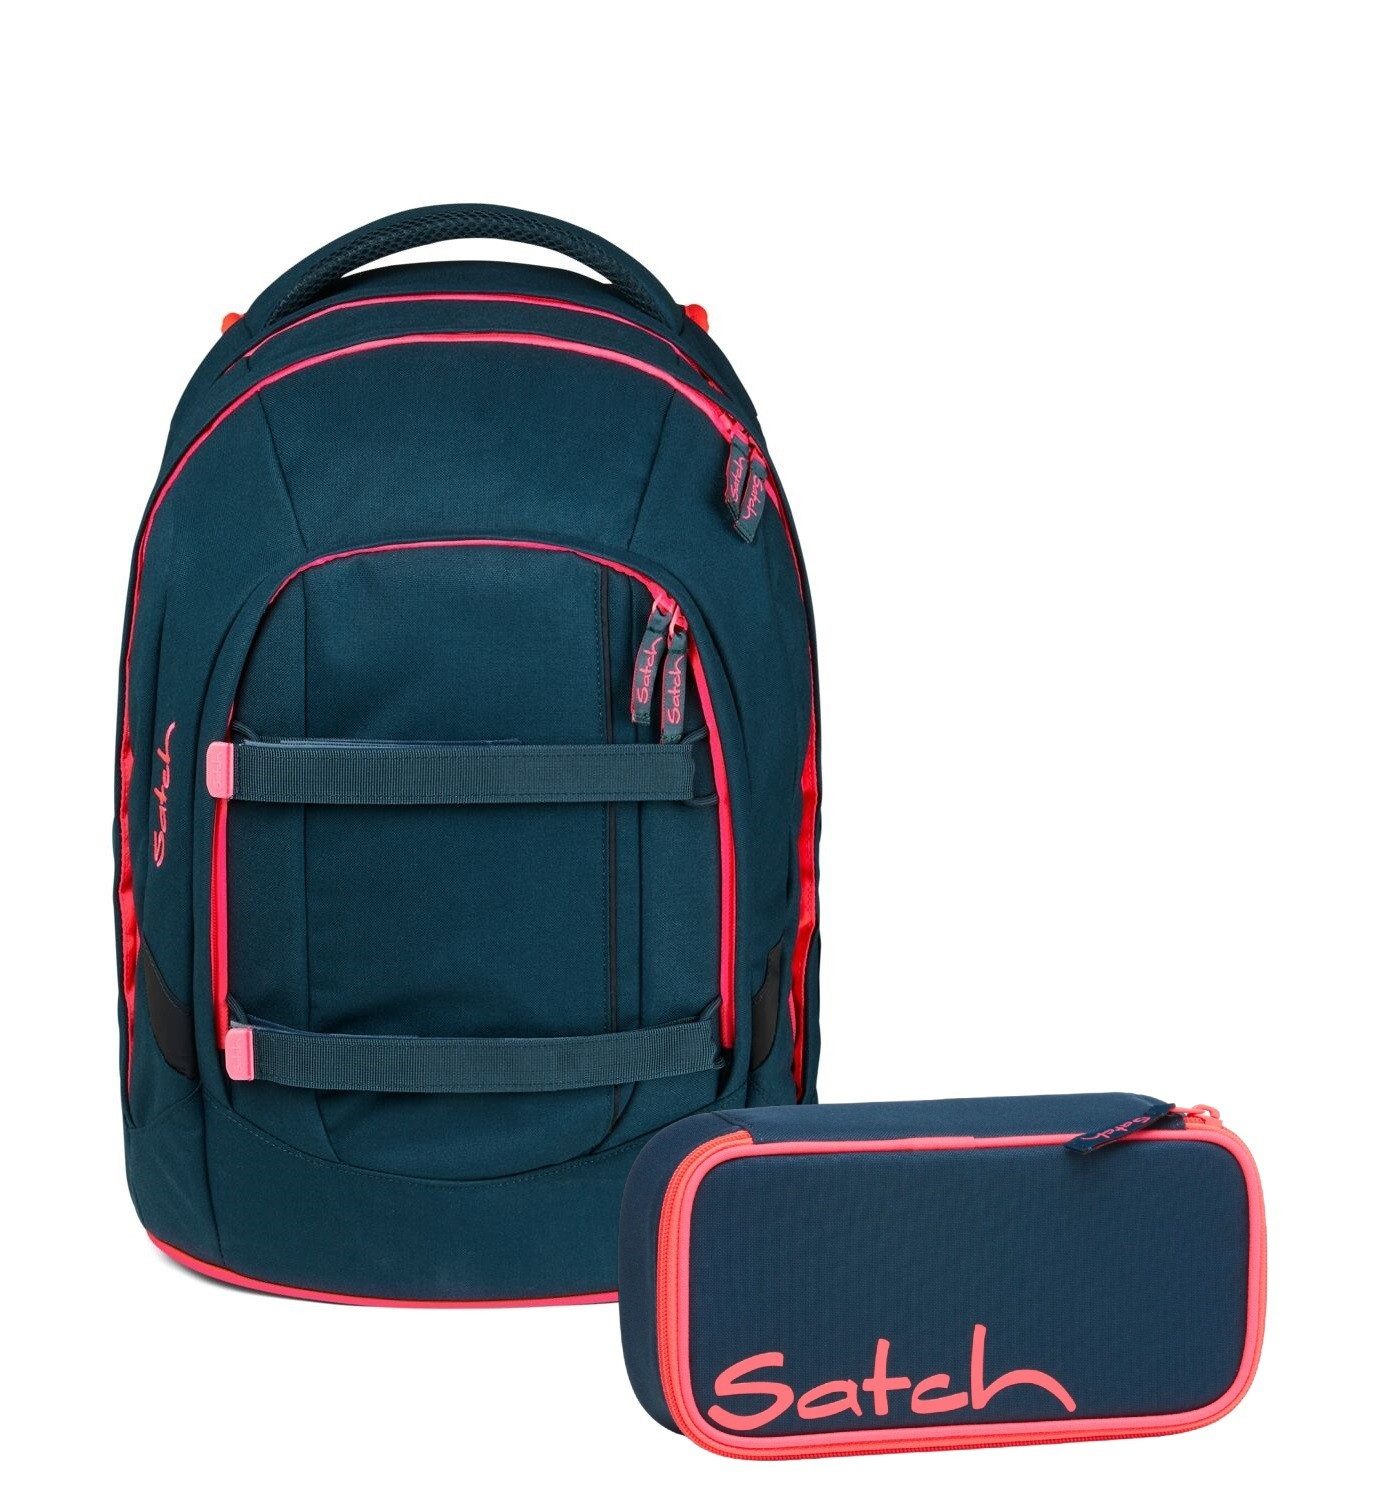 Satch Schulranzen Schulrucksack-Set PACK Pink Phantom 2-teilig (2-teilig), Laptop-Fach, Your-Size-System, Schulranzen